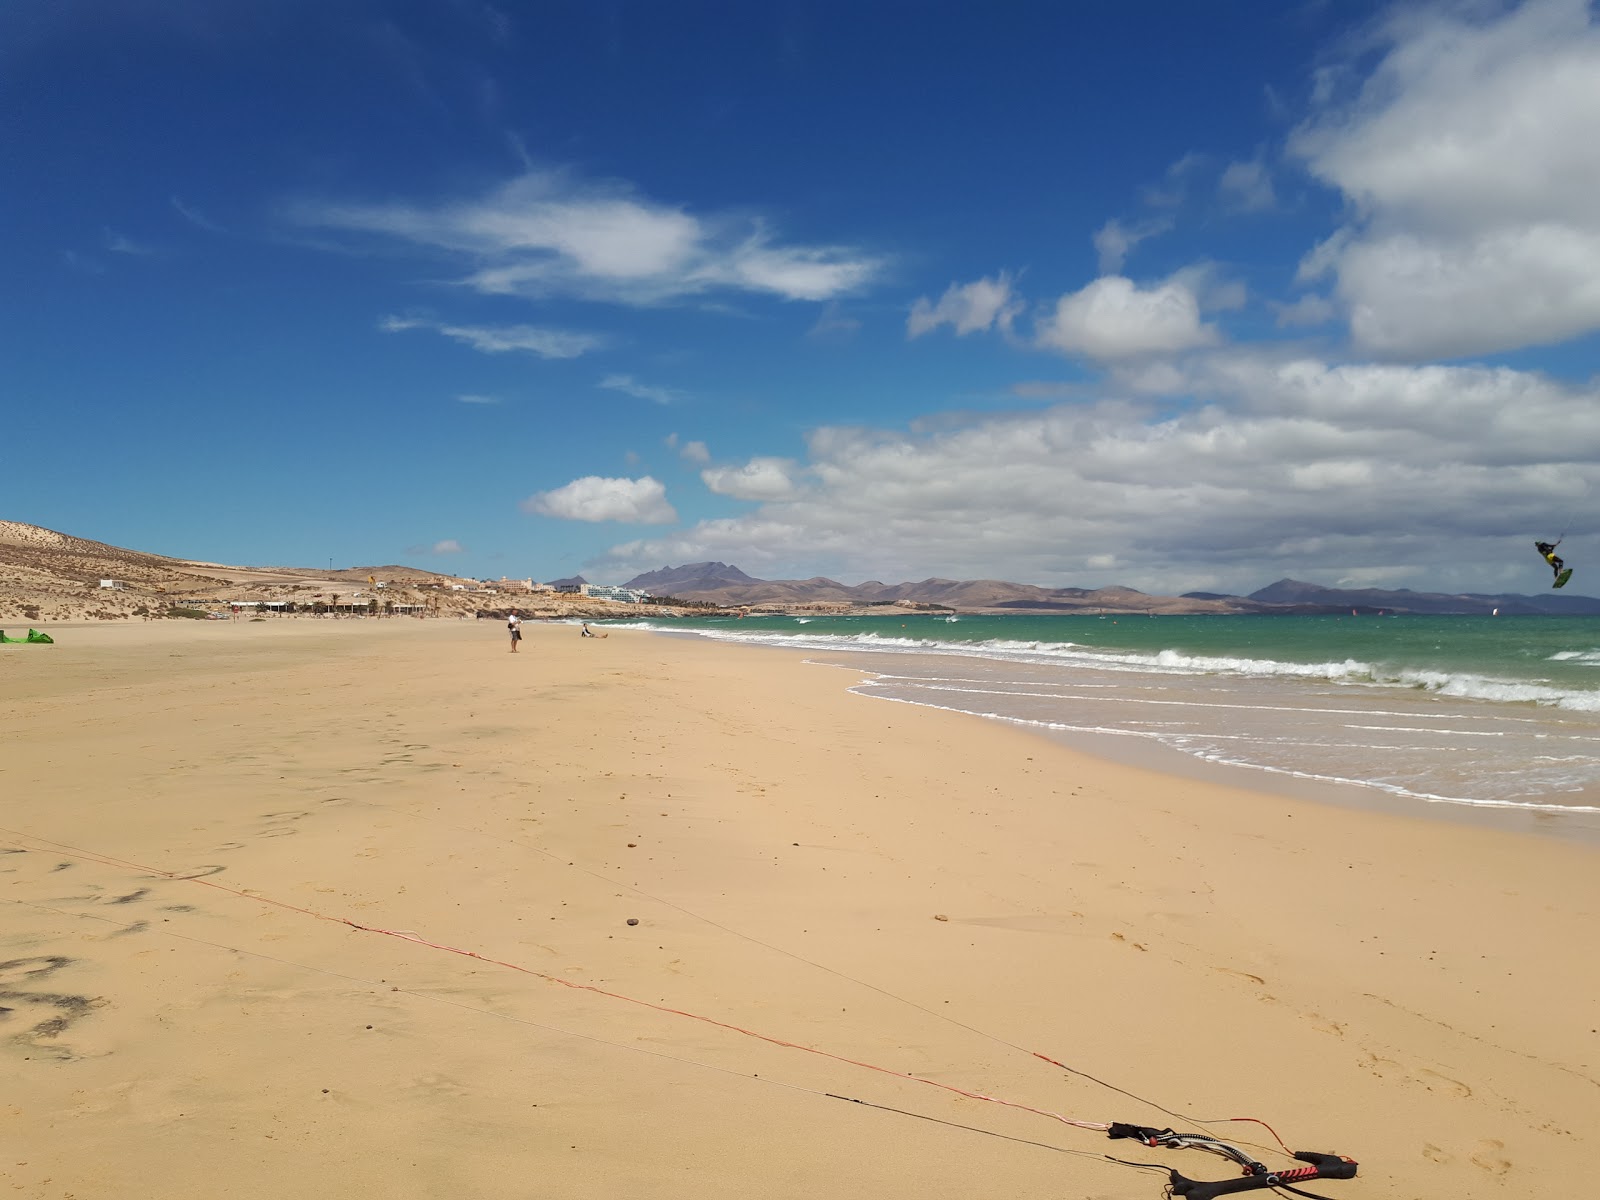 Playa de Sotavento de Jandia'in fotoğrafı i̇nce kahverengi kum yüzey ile